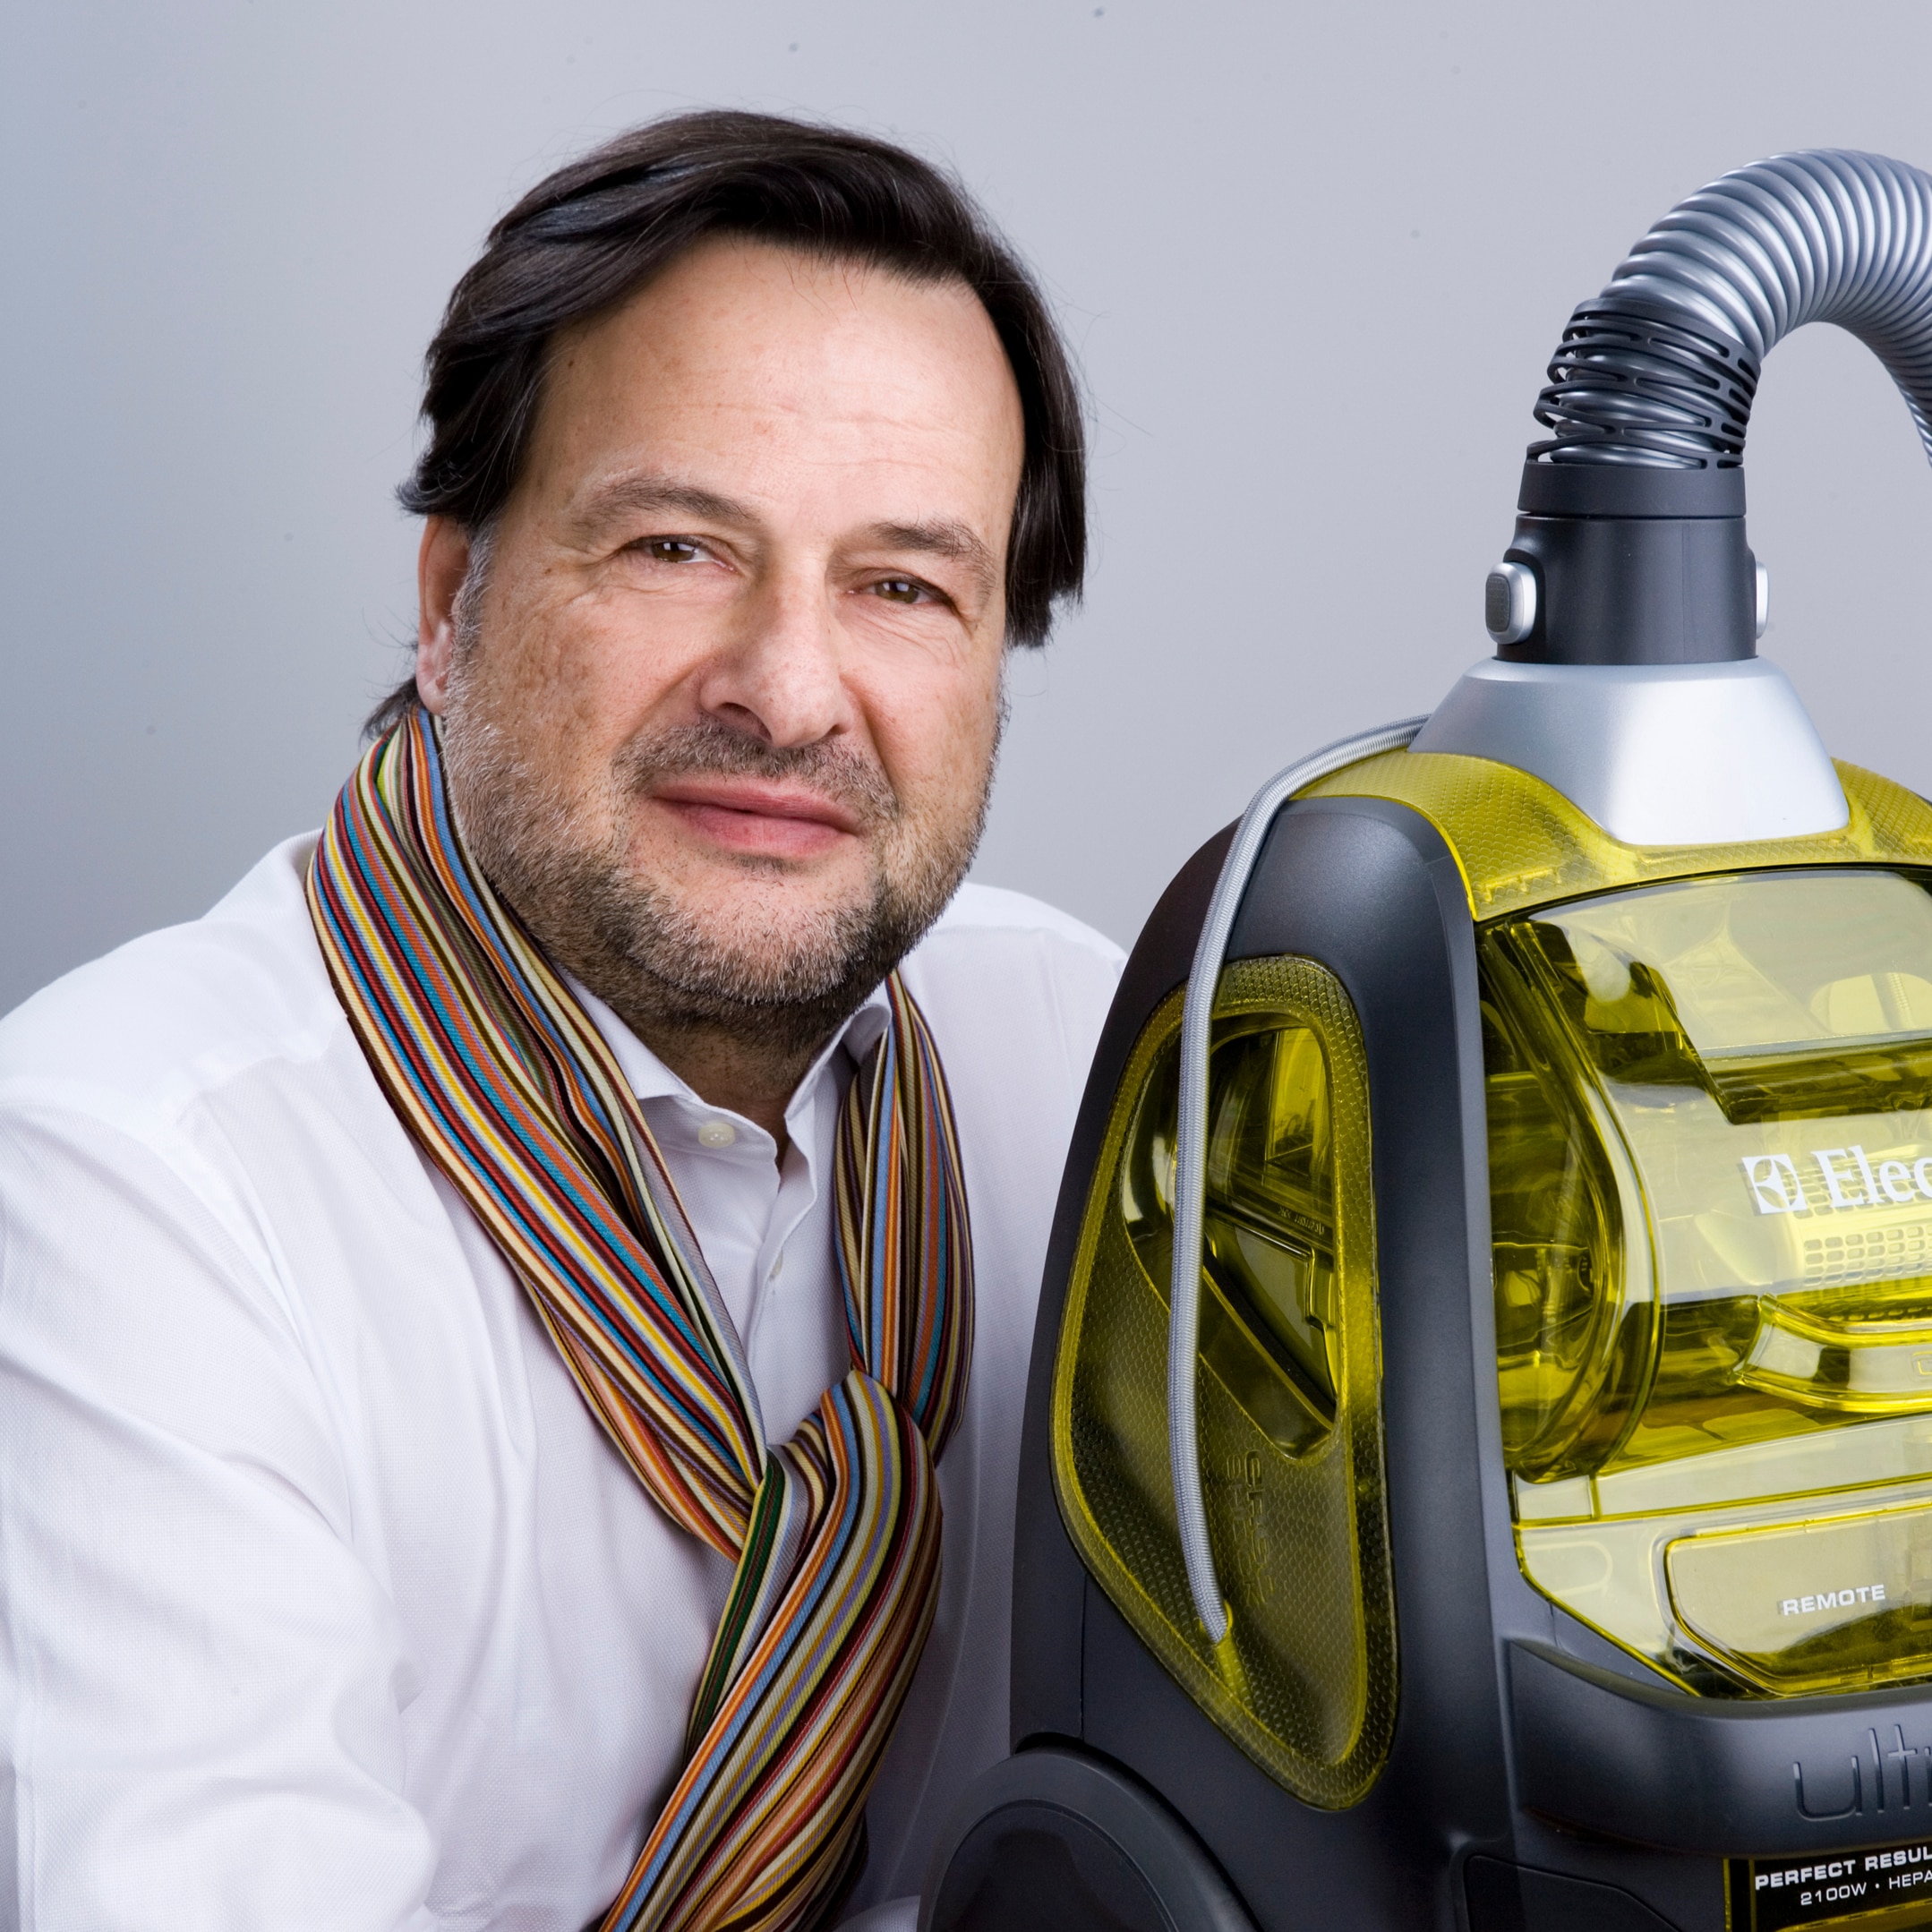 Stefano Marzano har utsetts till Chief Design Officer, en ny roll i Electrolux. Marzano kommer att leda en ny koncernstab som samlar alla designrelaterade kompetenser i koncernen.